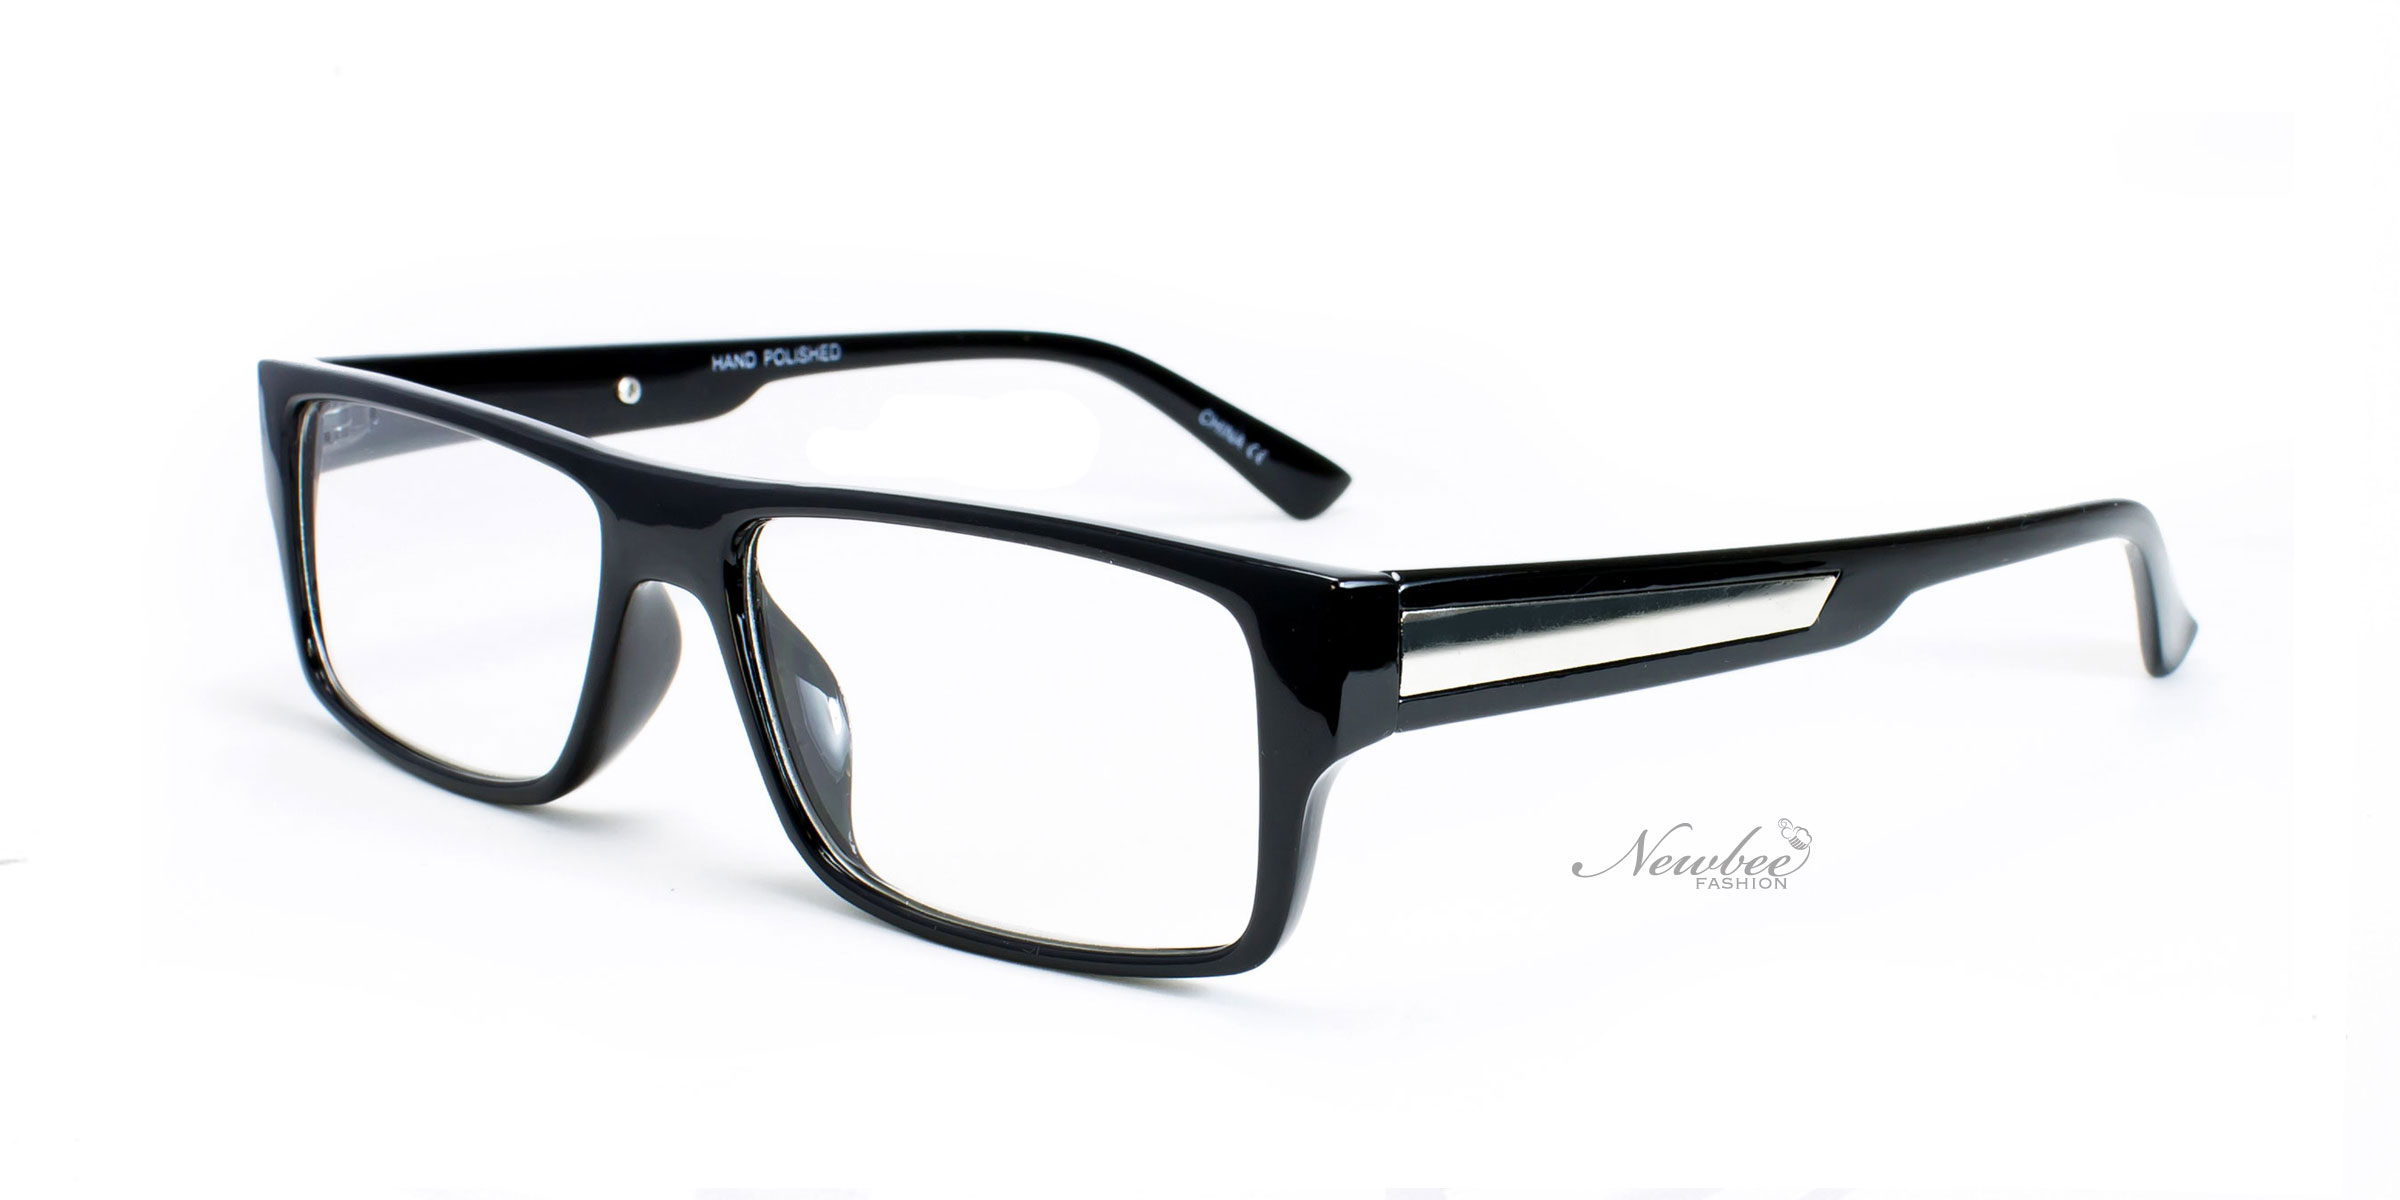 Classic Glossy Black Frame With Clear Non Prescription Lens Retro in Incredible  Fashion Non Prescription Glasses for Dream